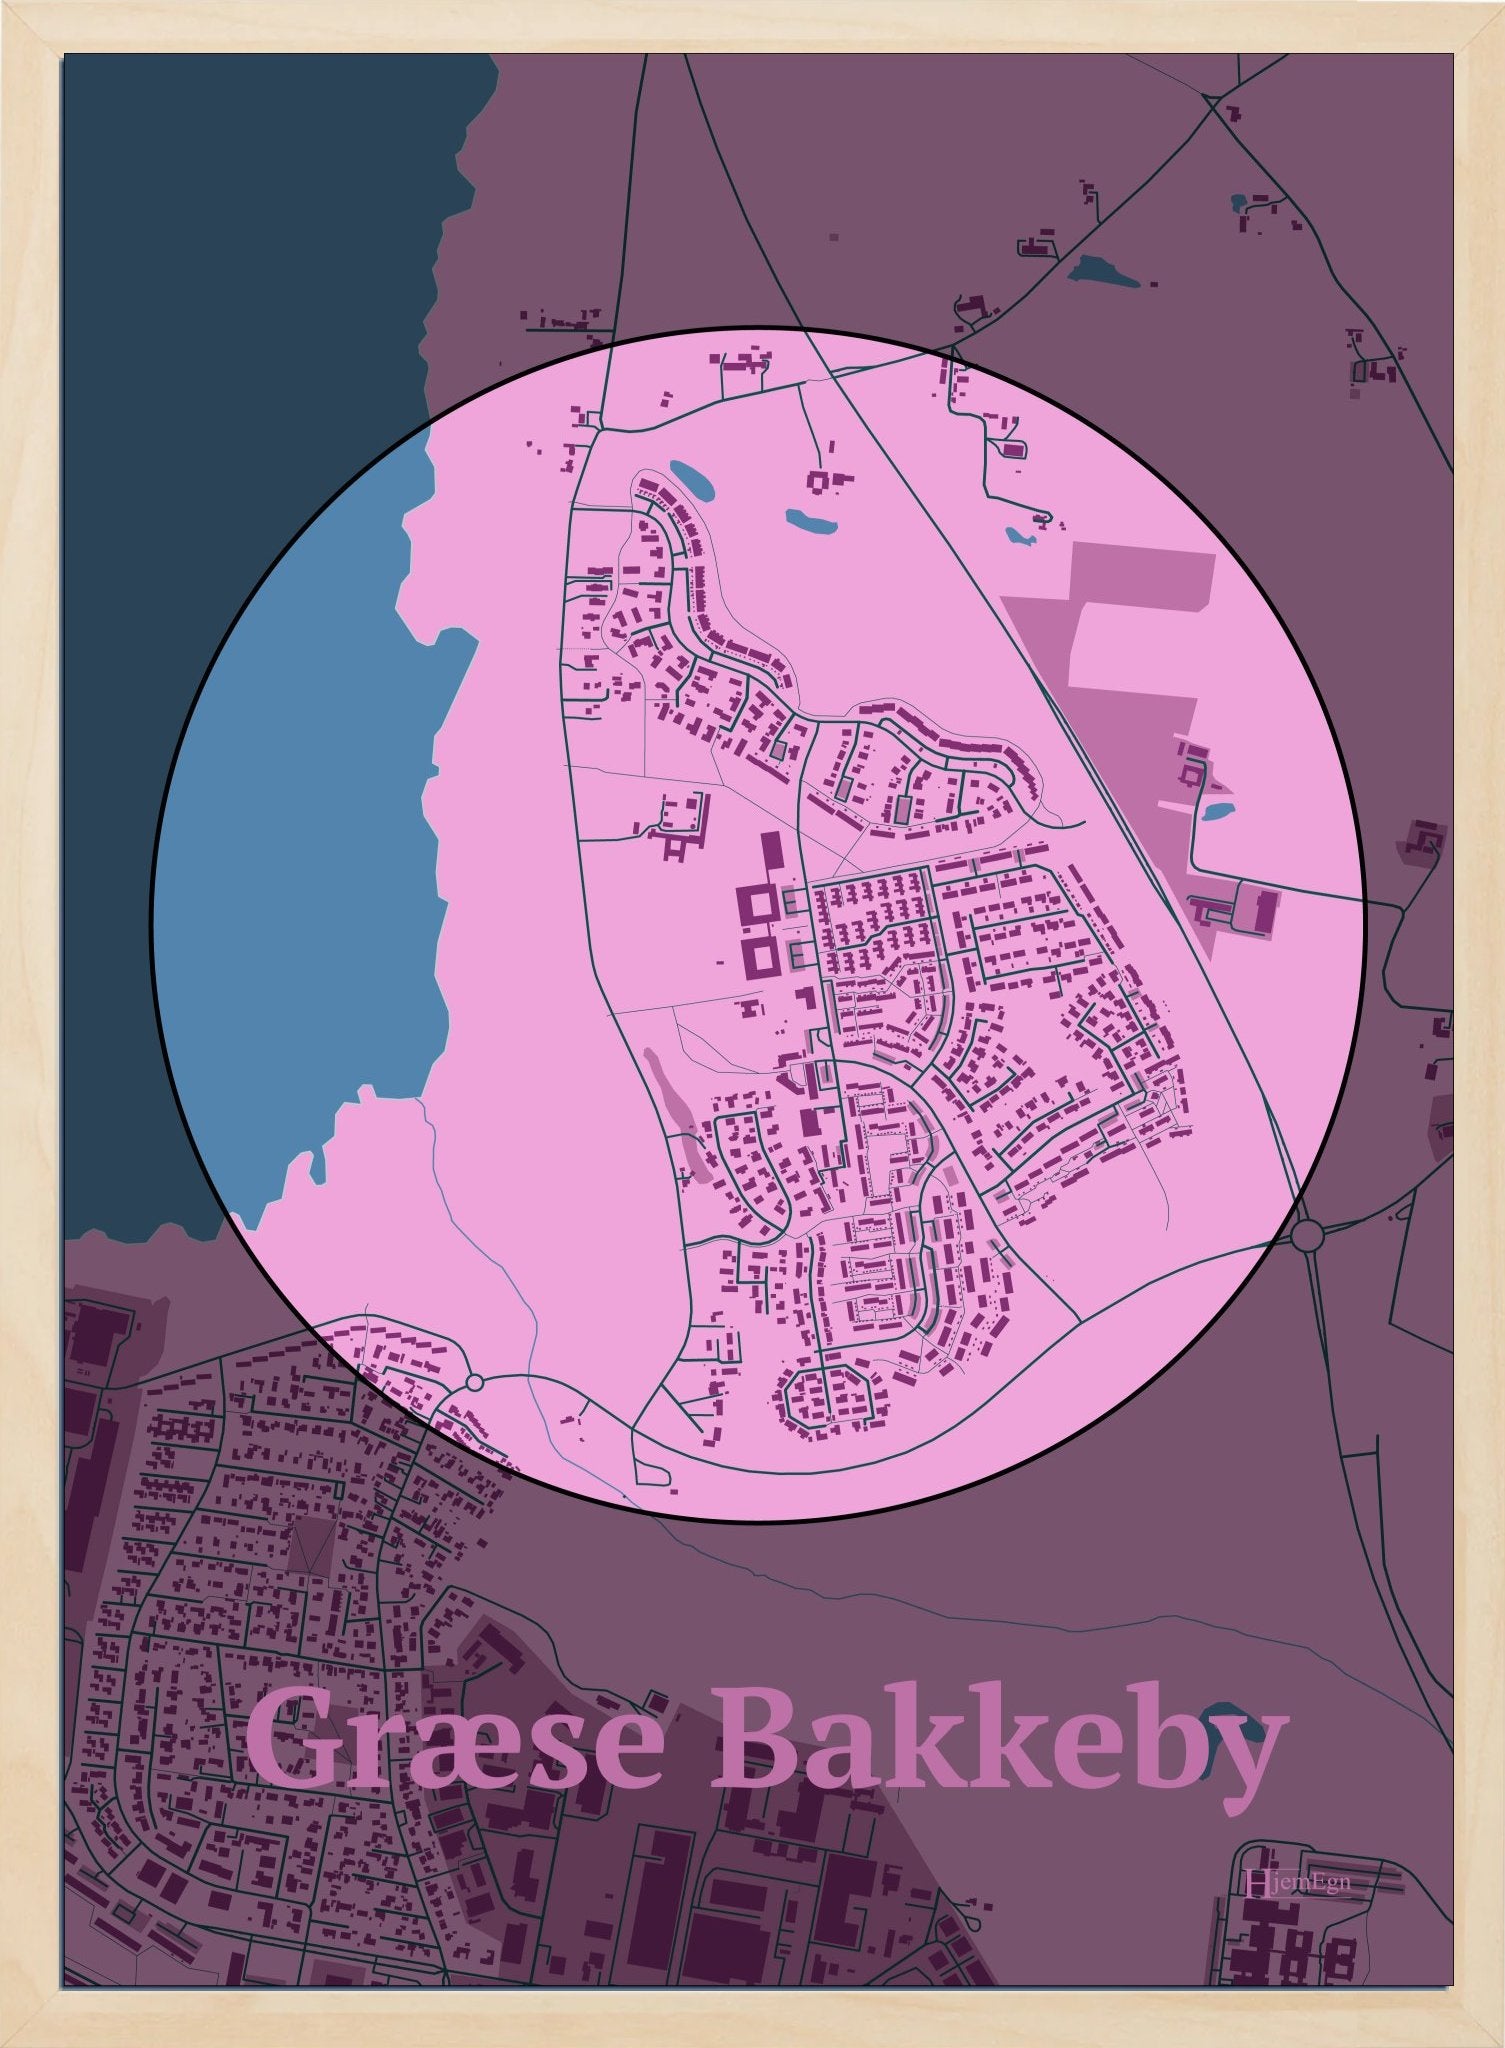 Græse Bakkeby plakat i farve pastel rød og HjemEgn.dk design centrum. Design bykort for Græse Bakkeby